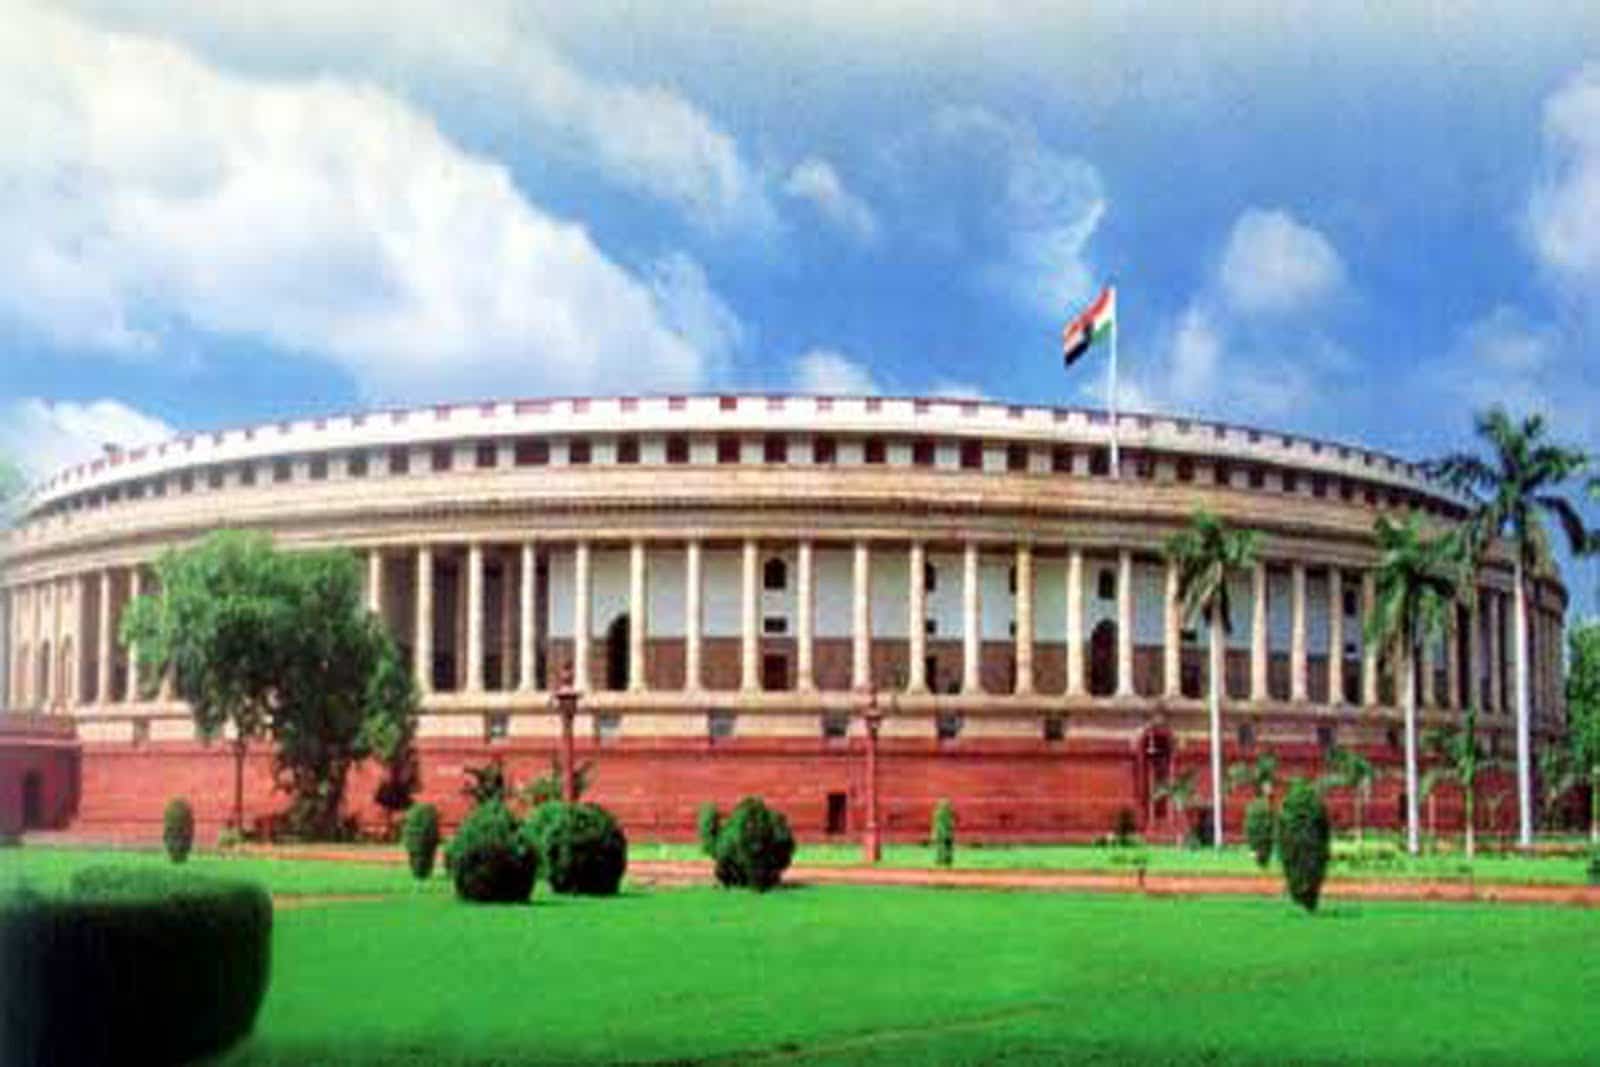 Le Parlement Indien Ne Considérera Pas L'Interdiction Totale De Crypto Lors De La Session D'Hiver